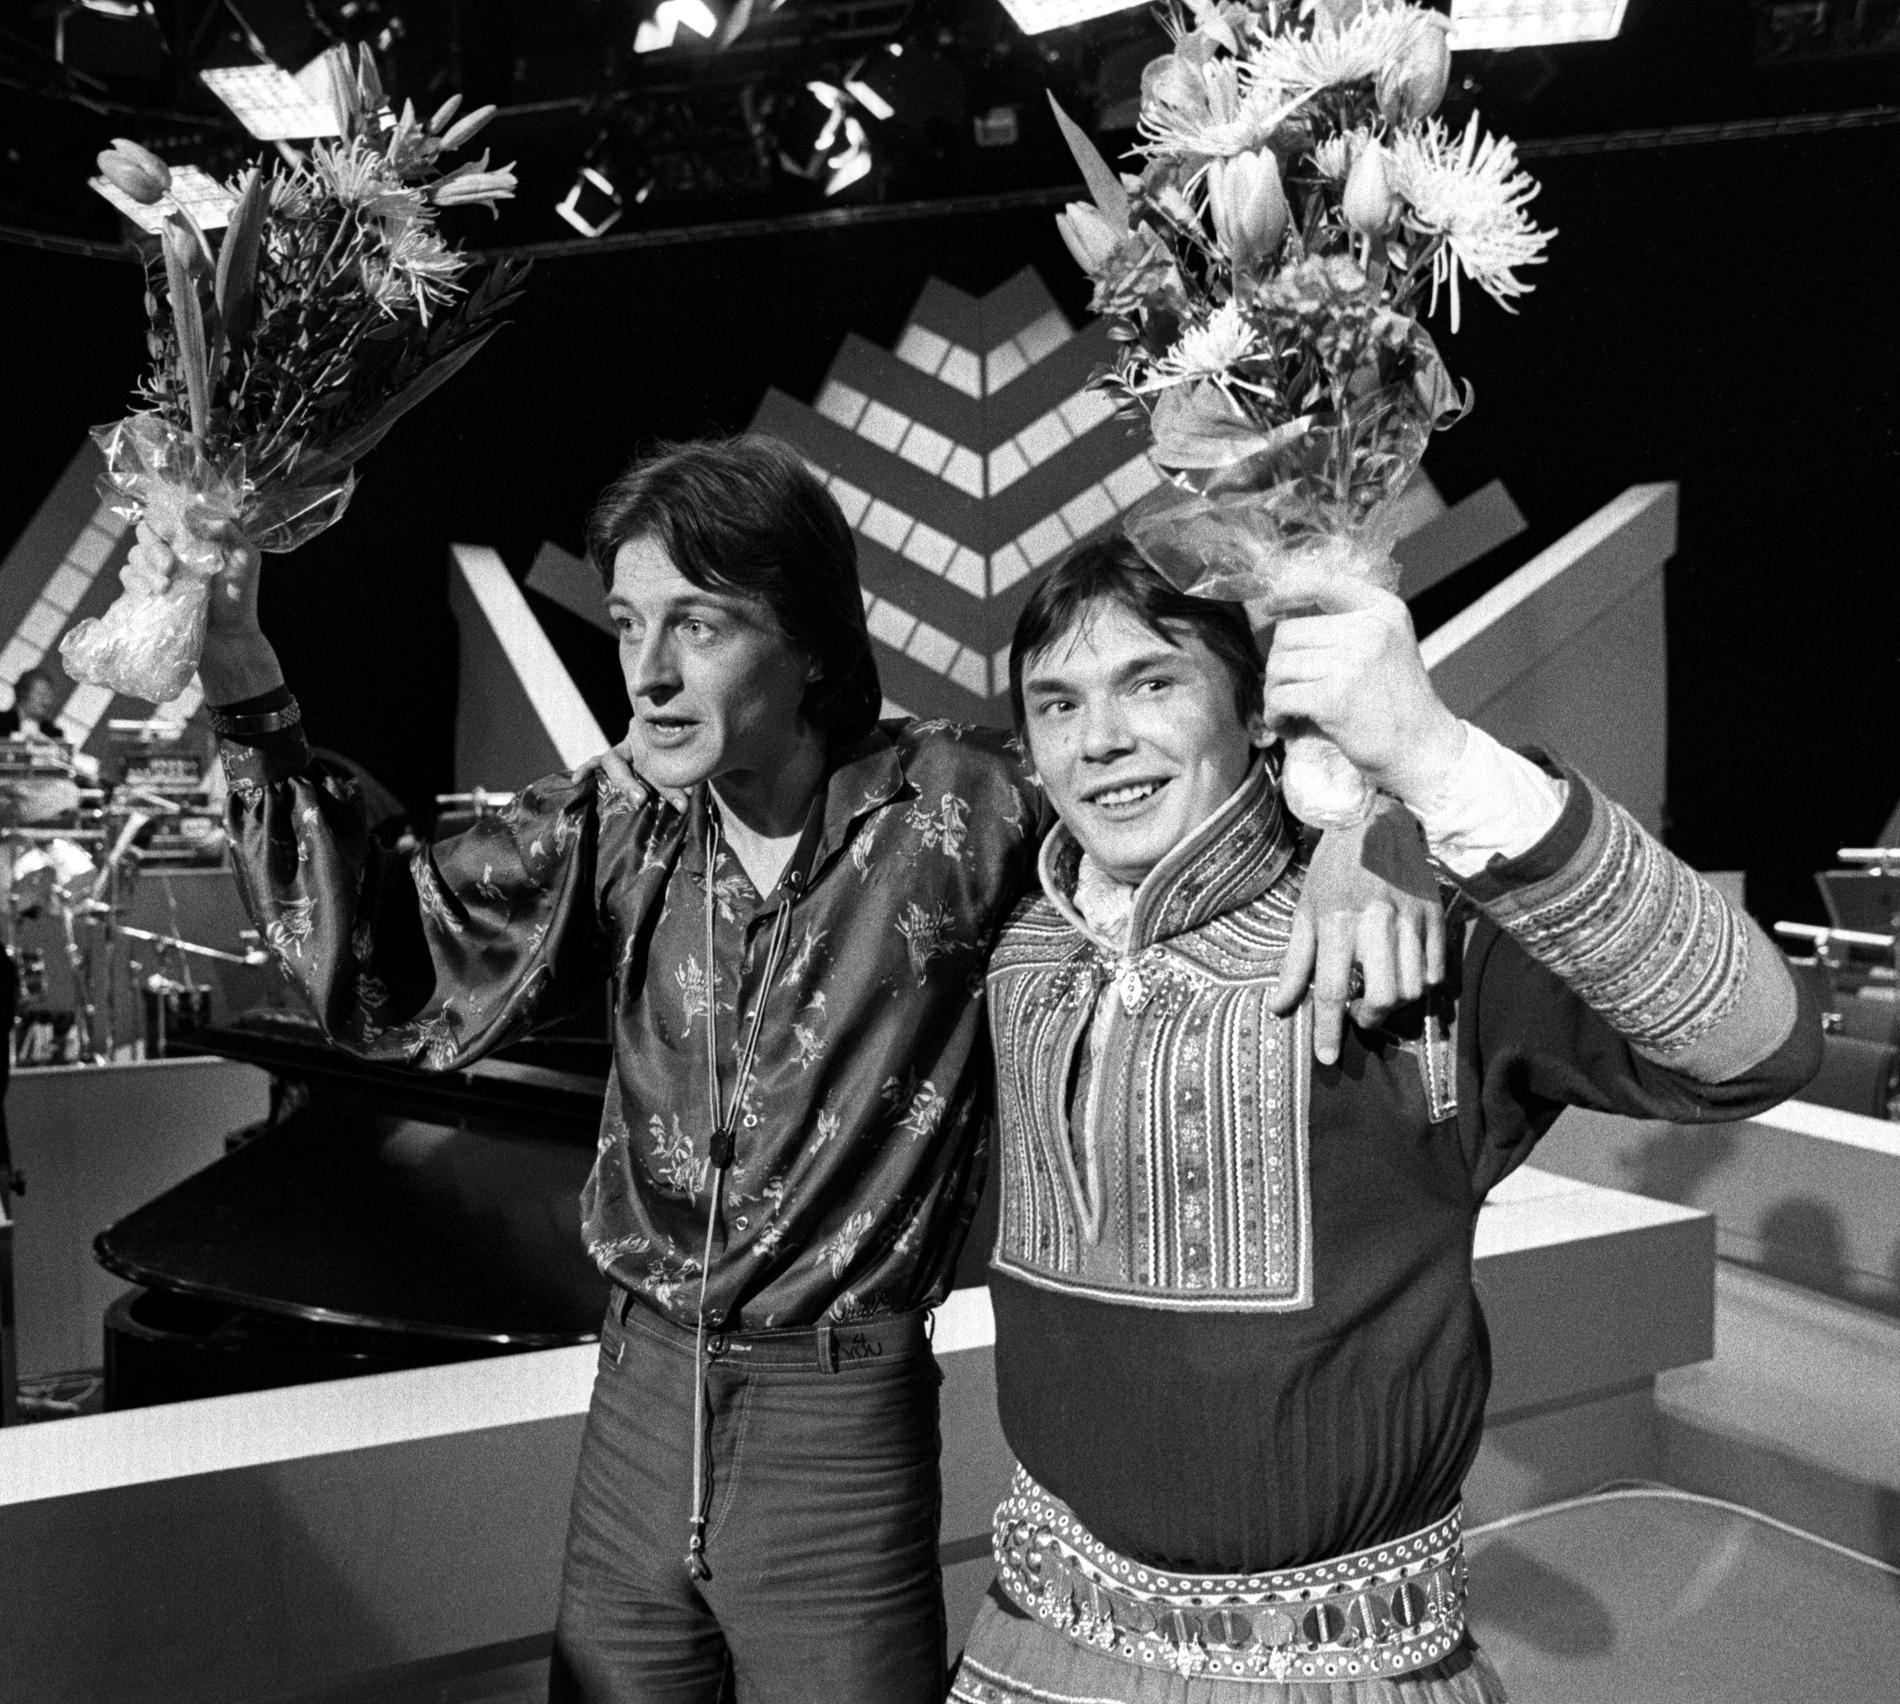 VINNERE: «Samiid Ædnan» var Norges bidrag i Melodi Grand Prix i 1980. Her er Sverre Kjelsberg og Mattis Hætta på scenen.